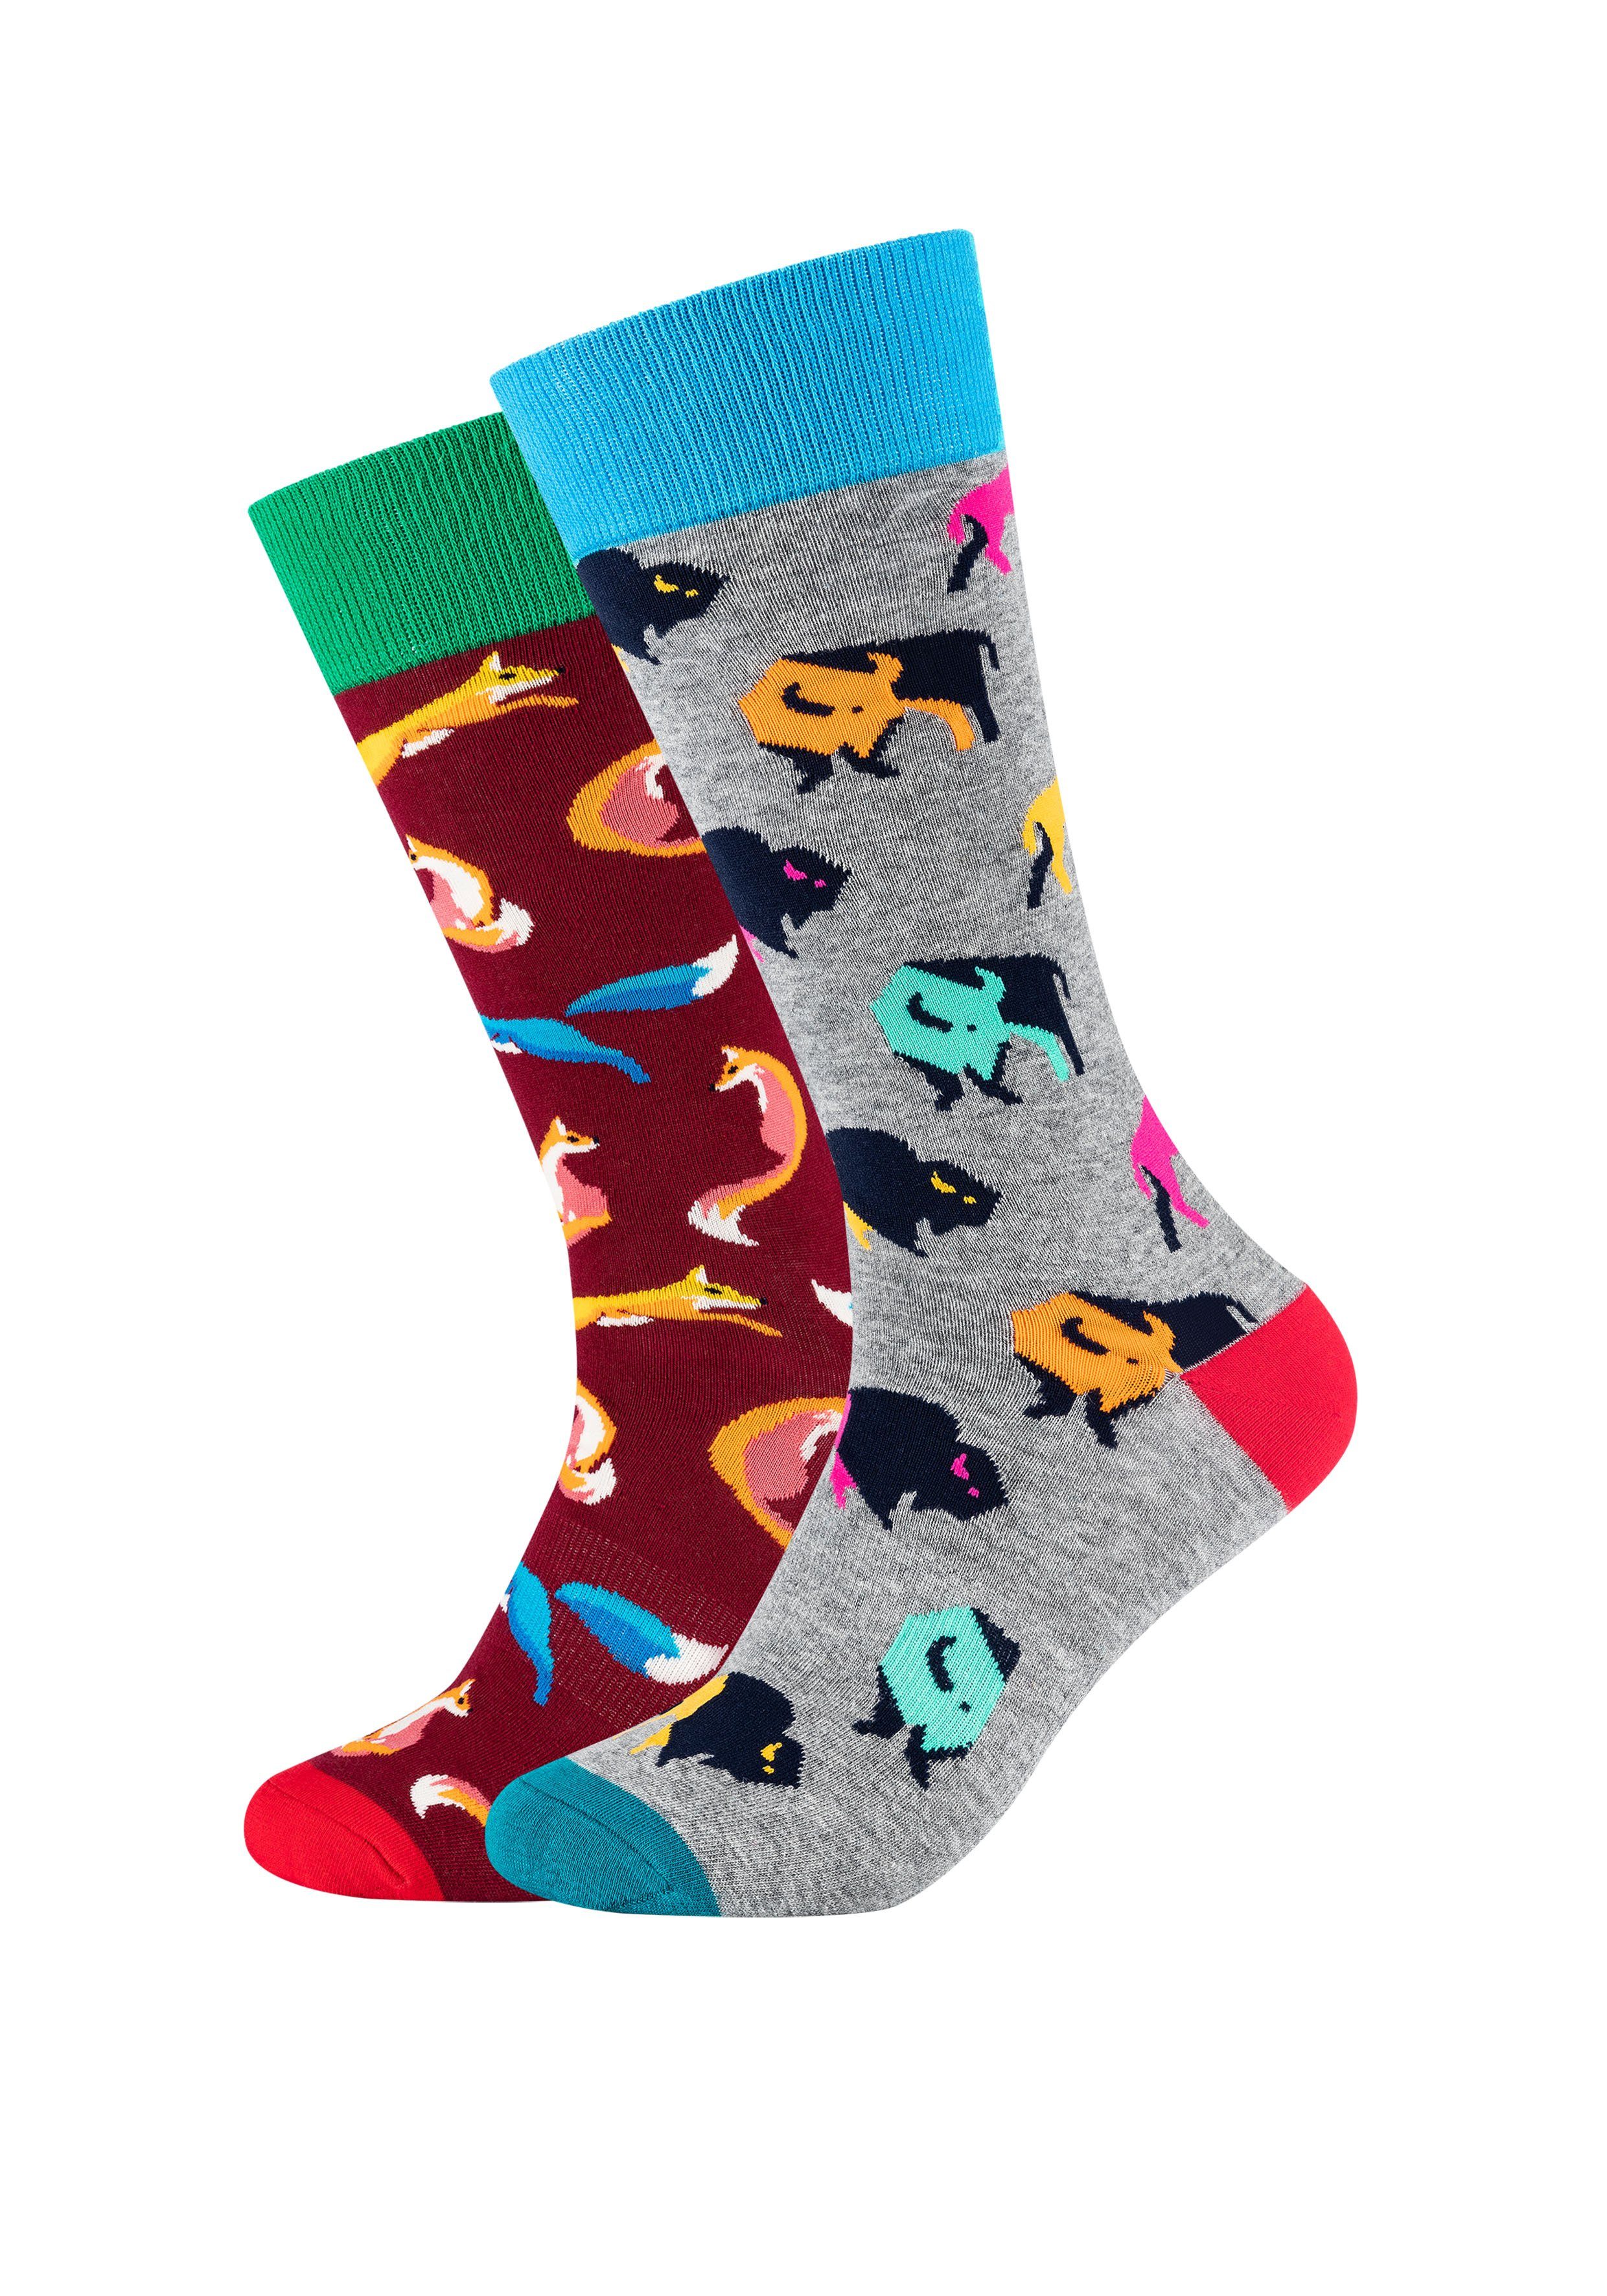 Fun Socks Socken (2-Paar) mit buntem Motiv kaufen | OTTO